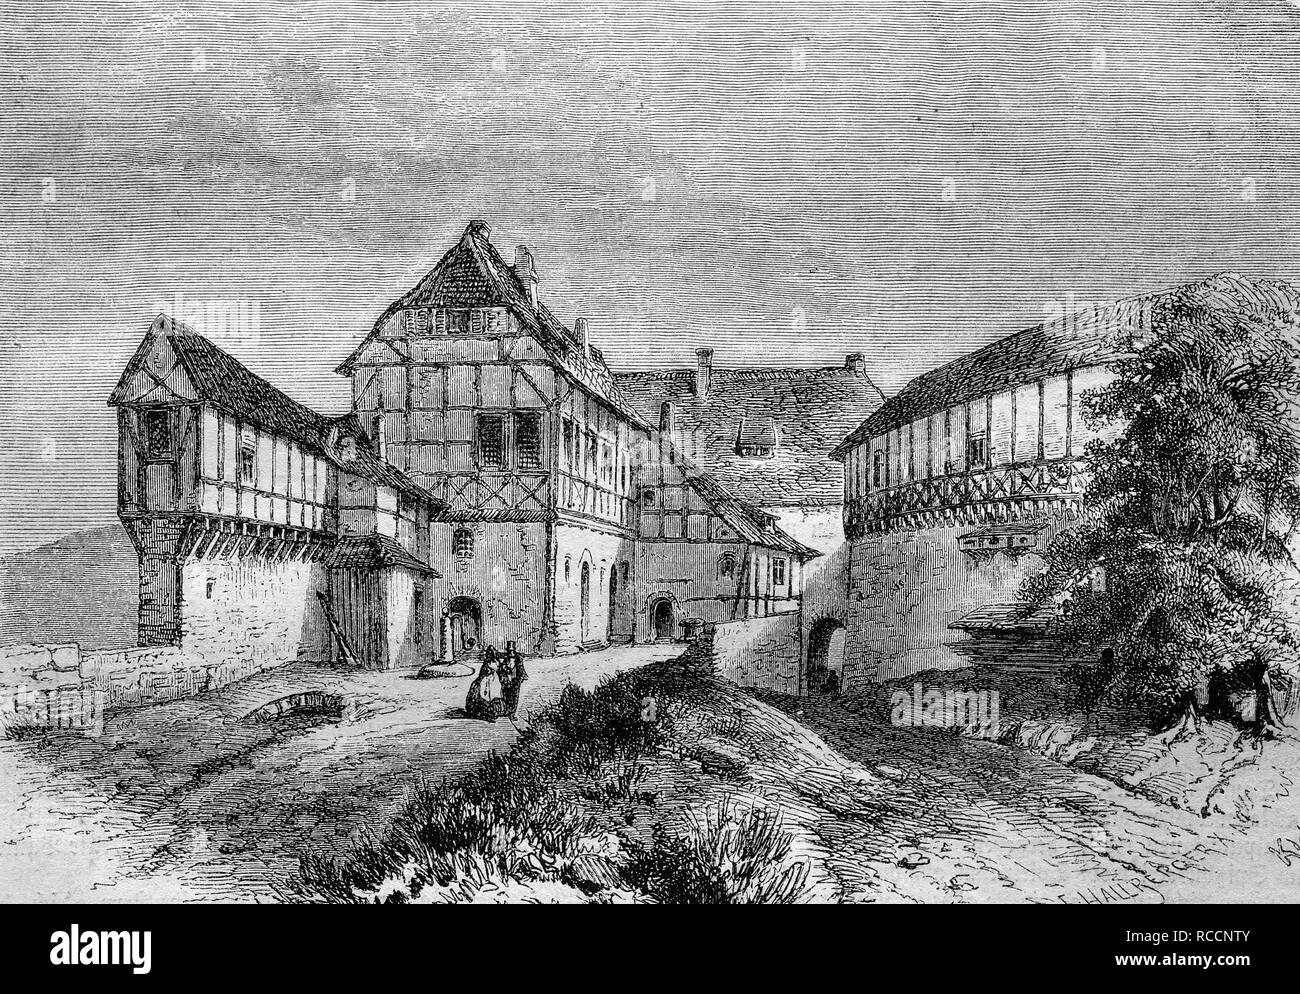 Ritterhaus, Knight House, Luther's home en château de Wartburg, Allemagne, historique de la gravure sur bois, vers 1888 Banque D'Images